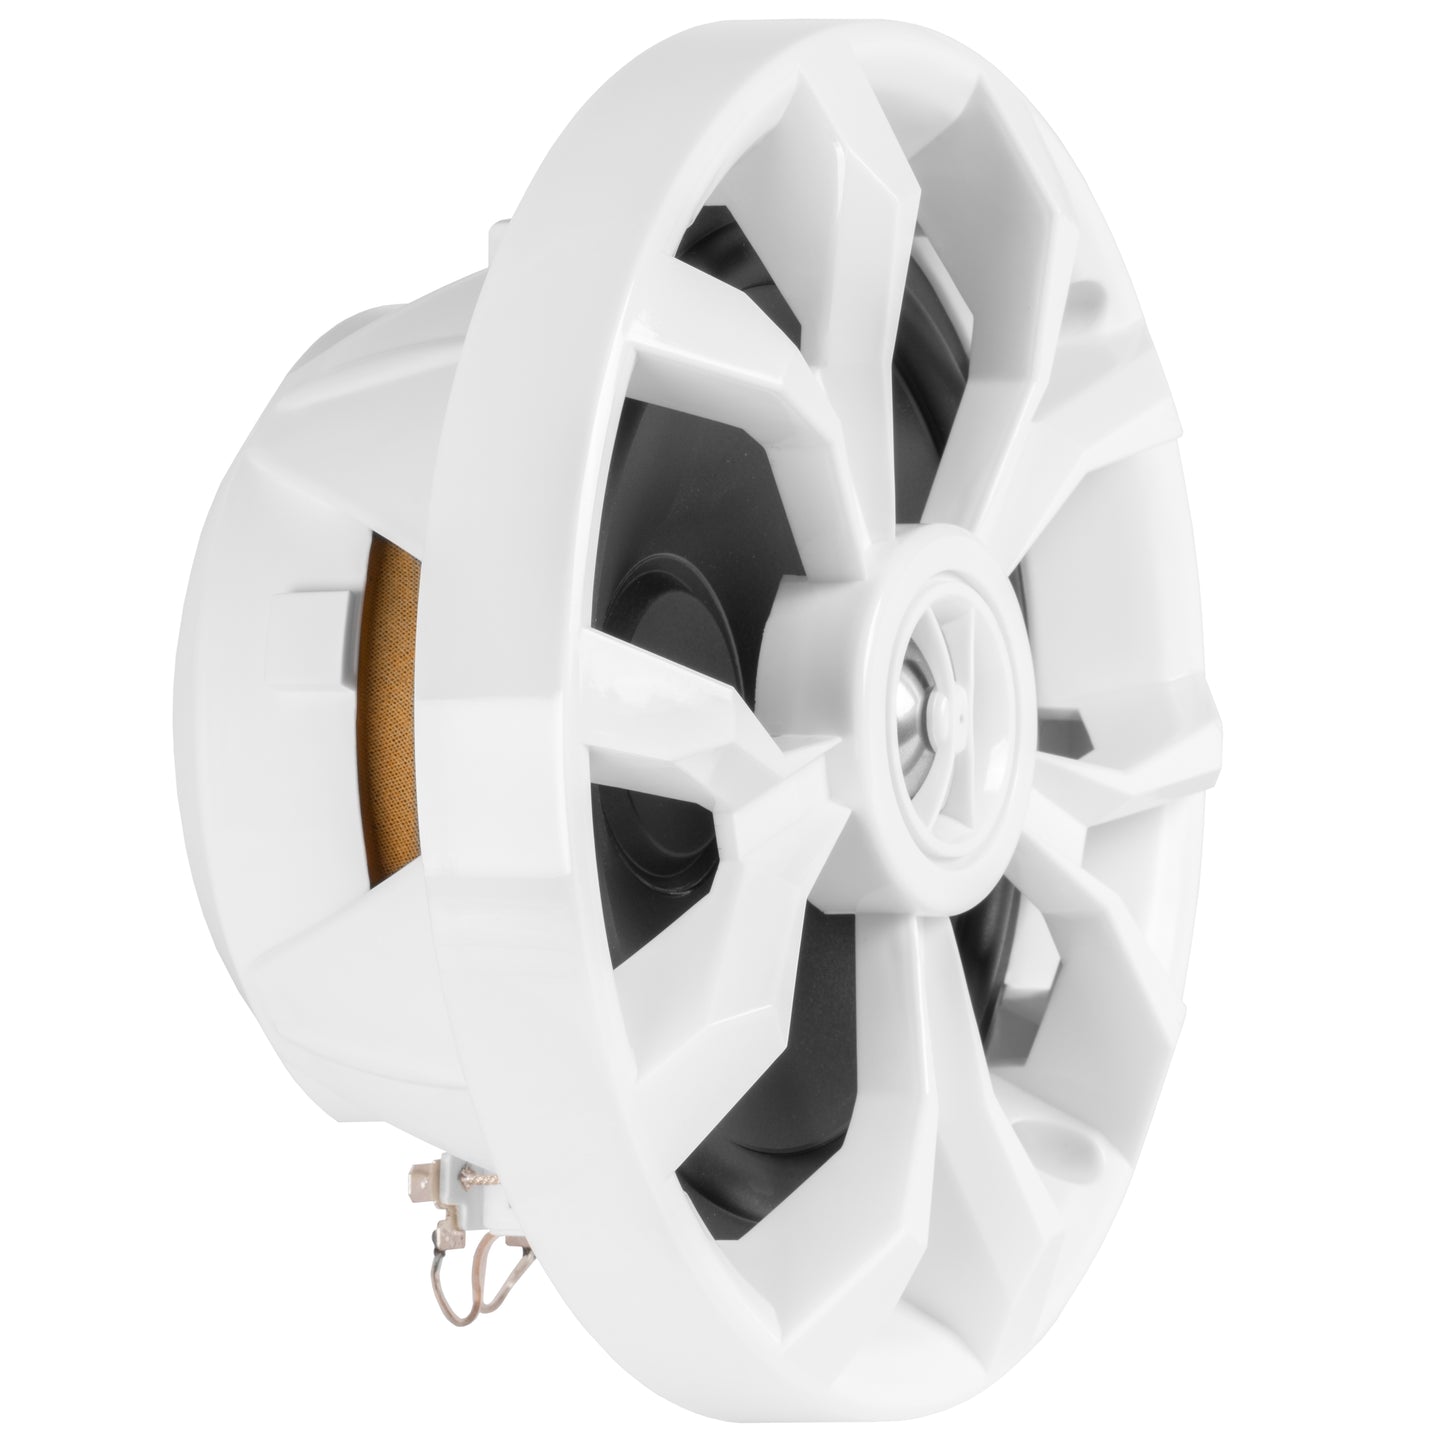 BBMS65W 400W Peak (200W RMS) 6.5" 2-Way Coaxial Marine Speakers (White)